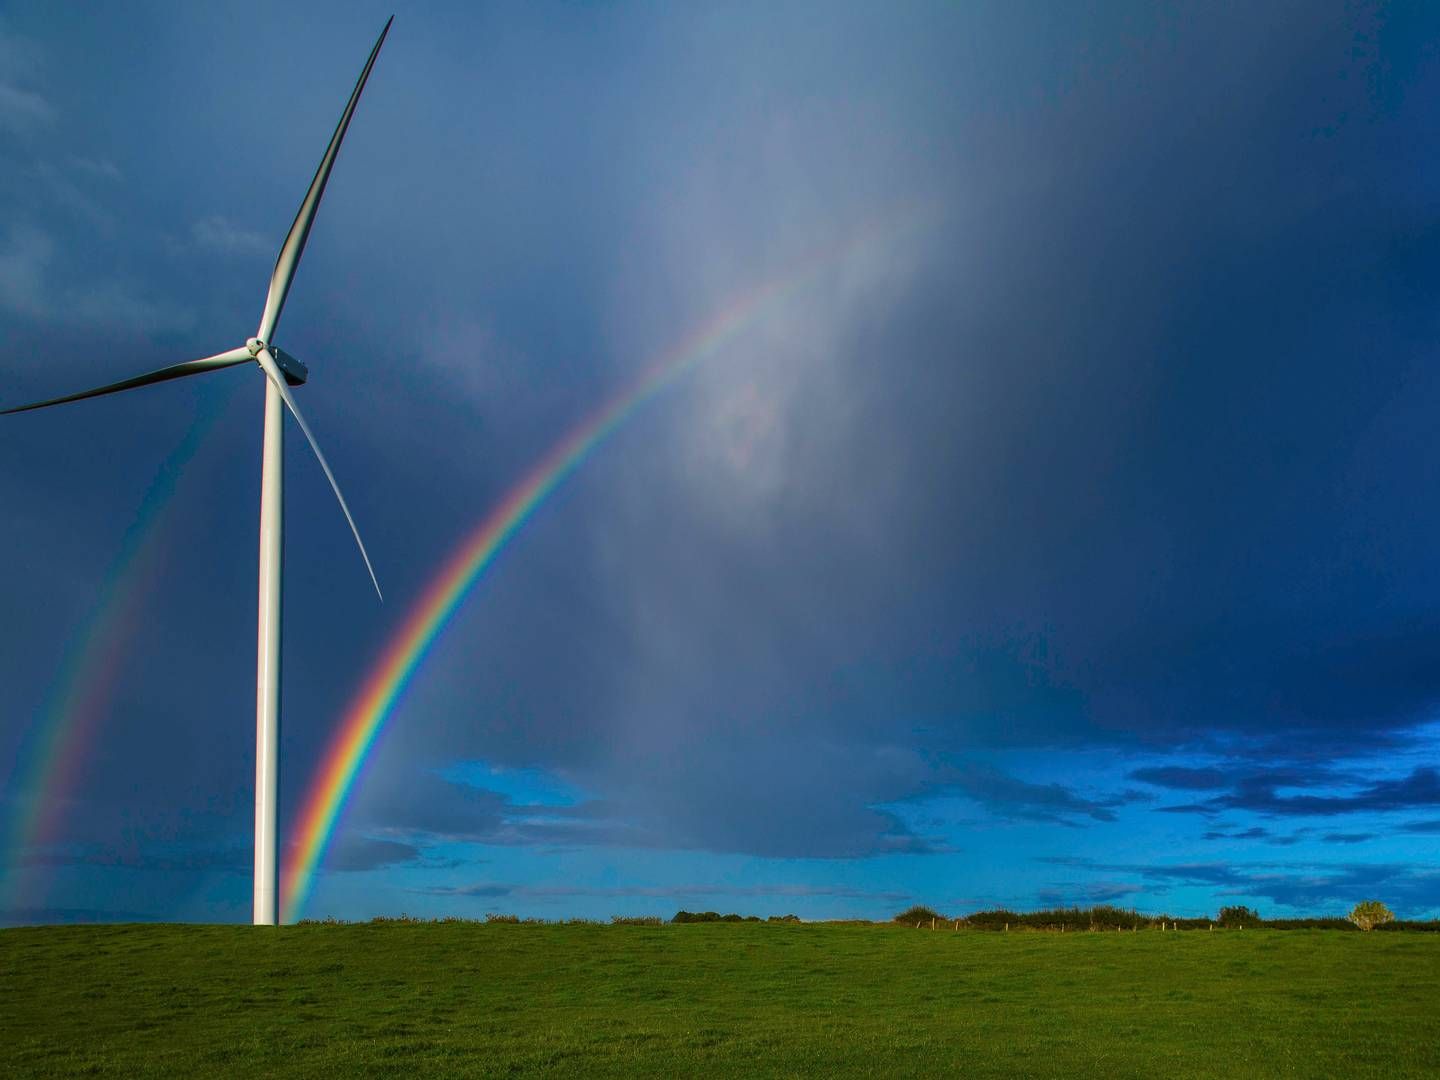 Foto: Storm Windpower / Keith Arkins